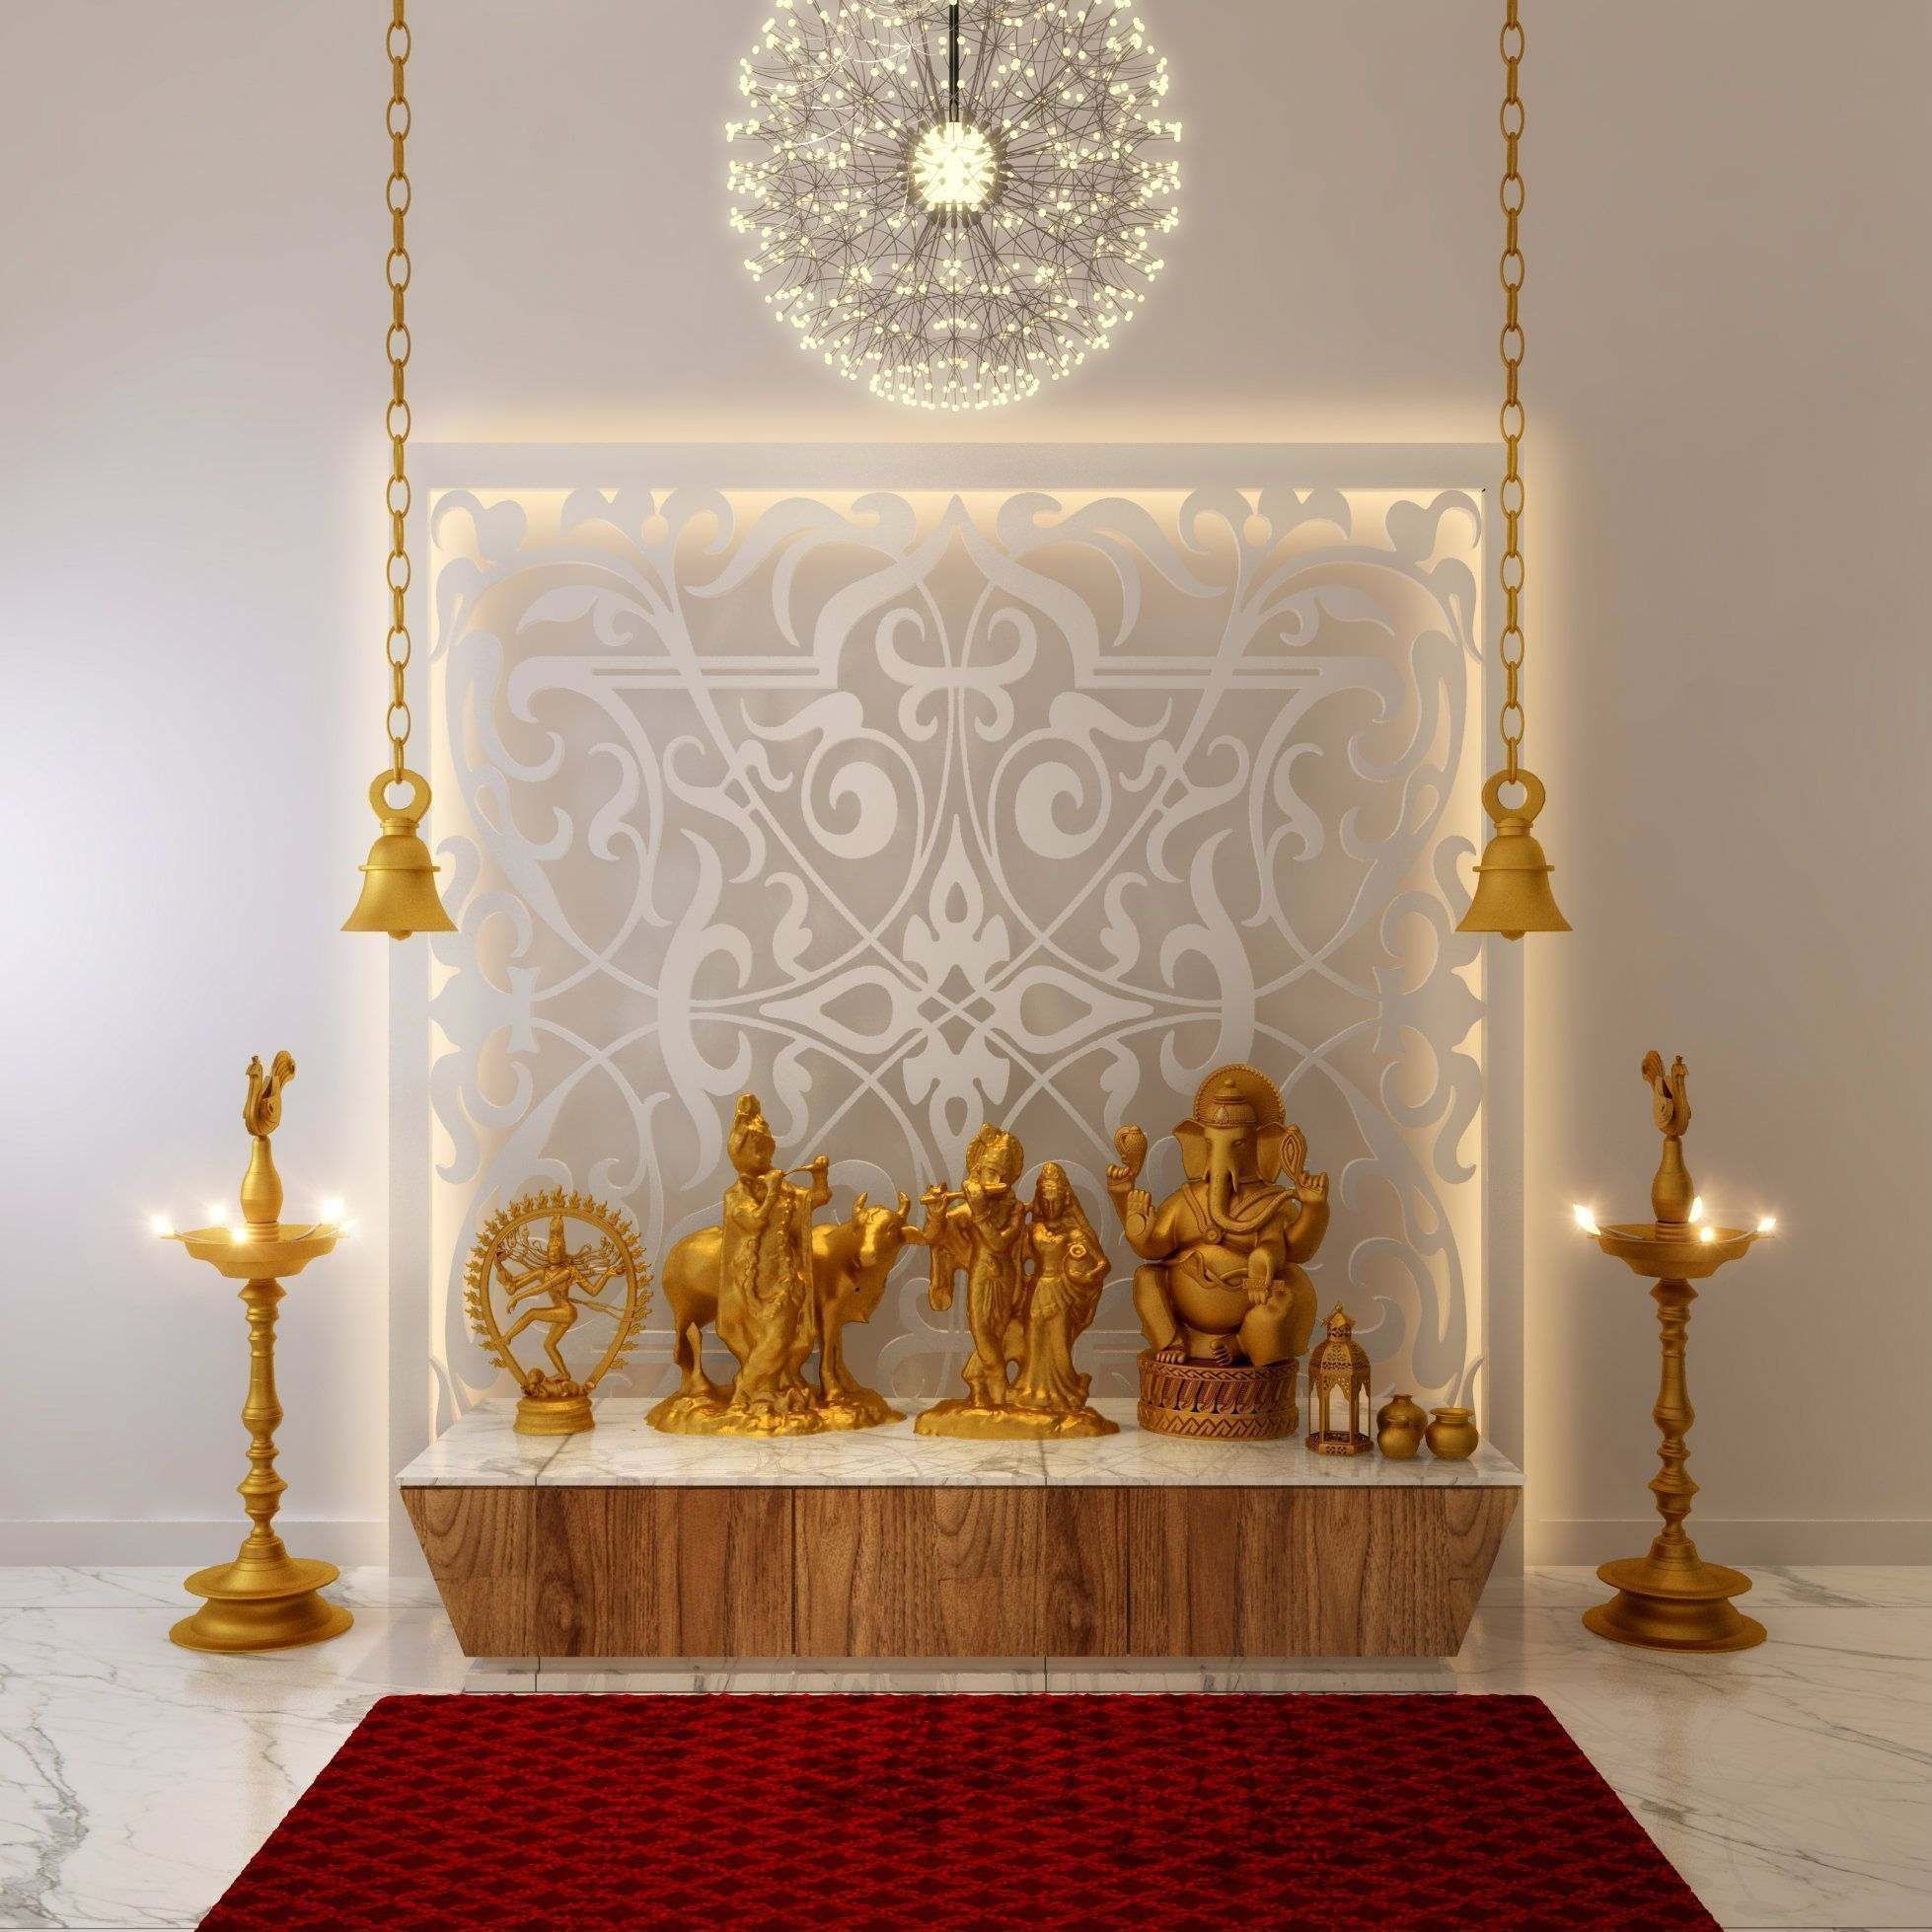 14 Mandir Designs For Home - Elegant Home Temple Designs for a Beautiful  Decor